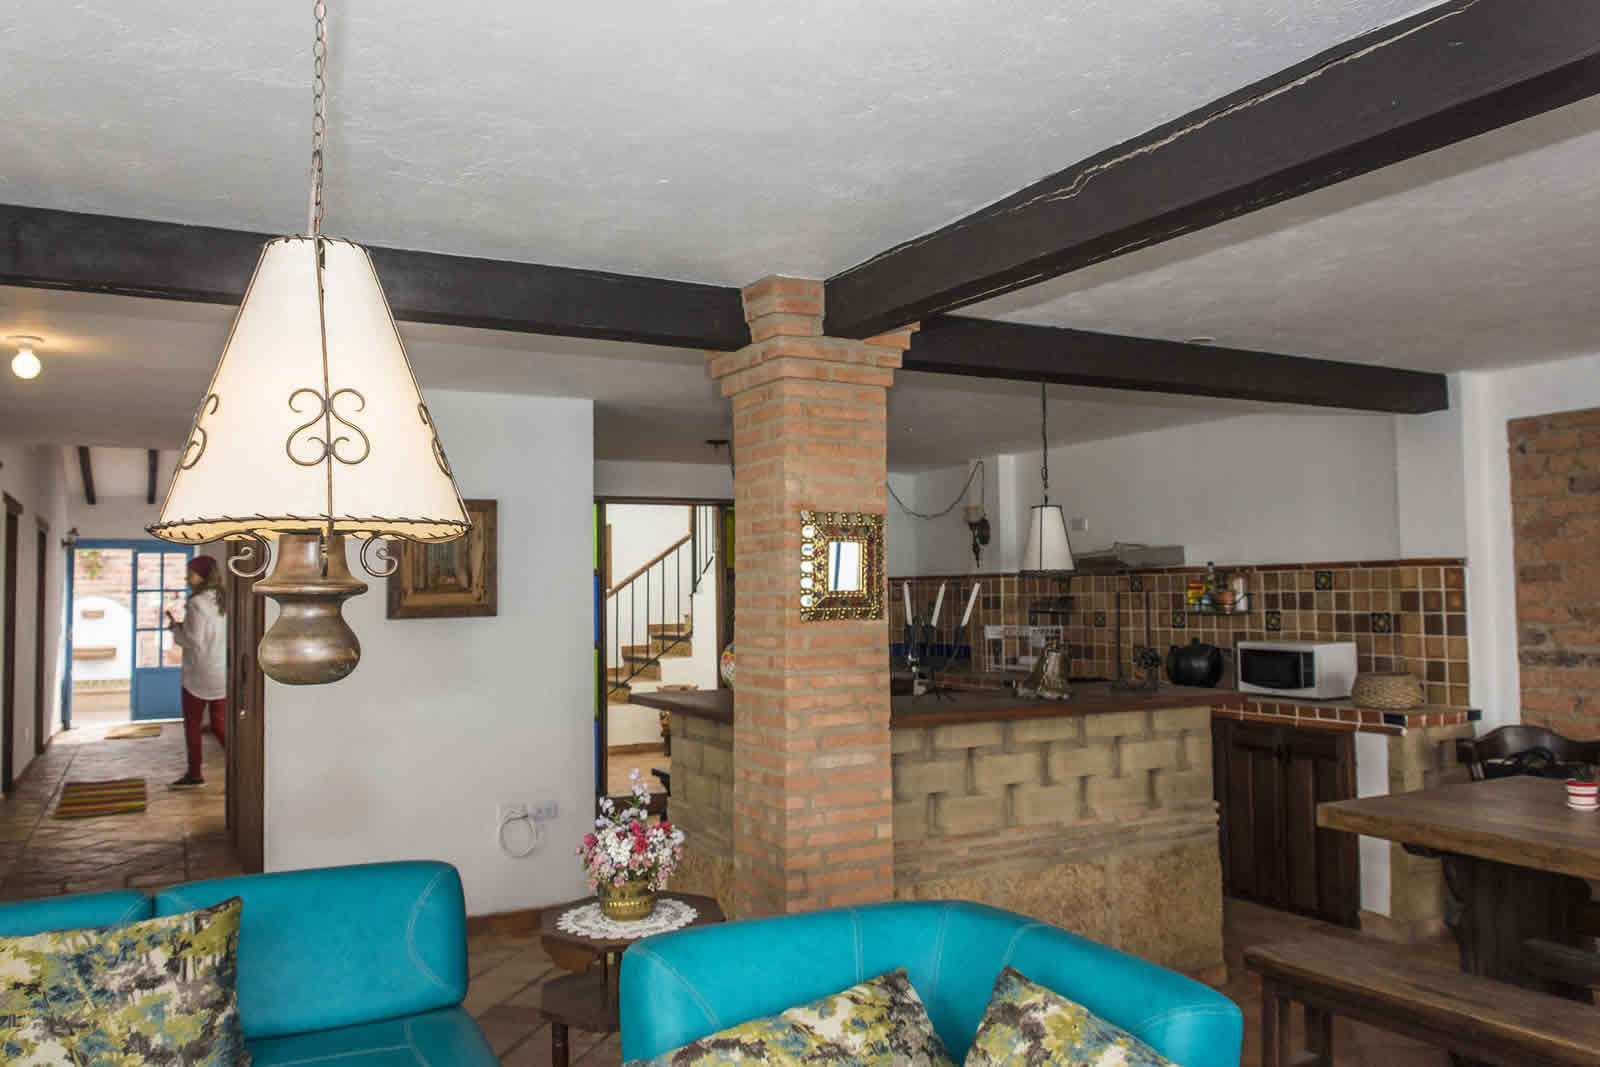 Alquiler Casa Azul en Villa de Leyva Cocina